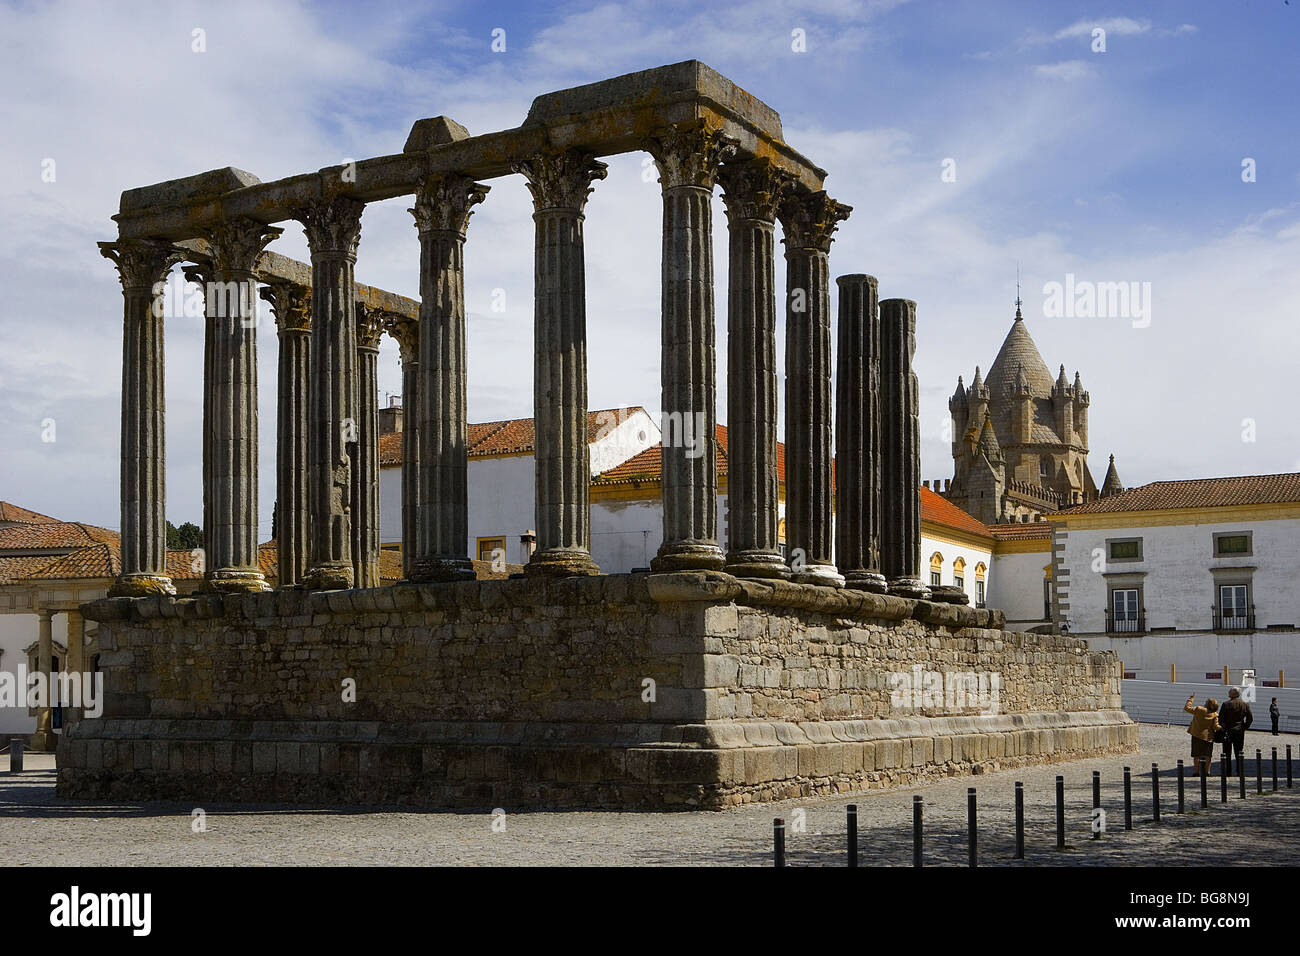 Tempio romano. Colonnato con capitelli corinzi. Evora. Il Portogallo. Foto Stock